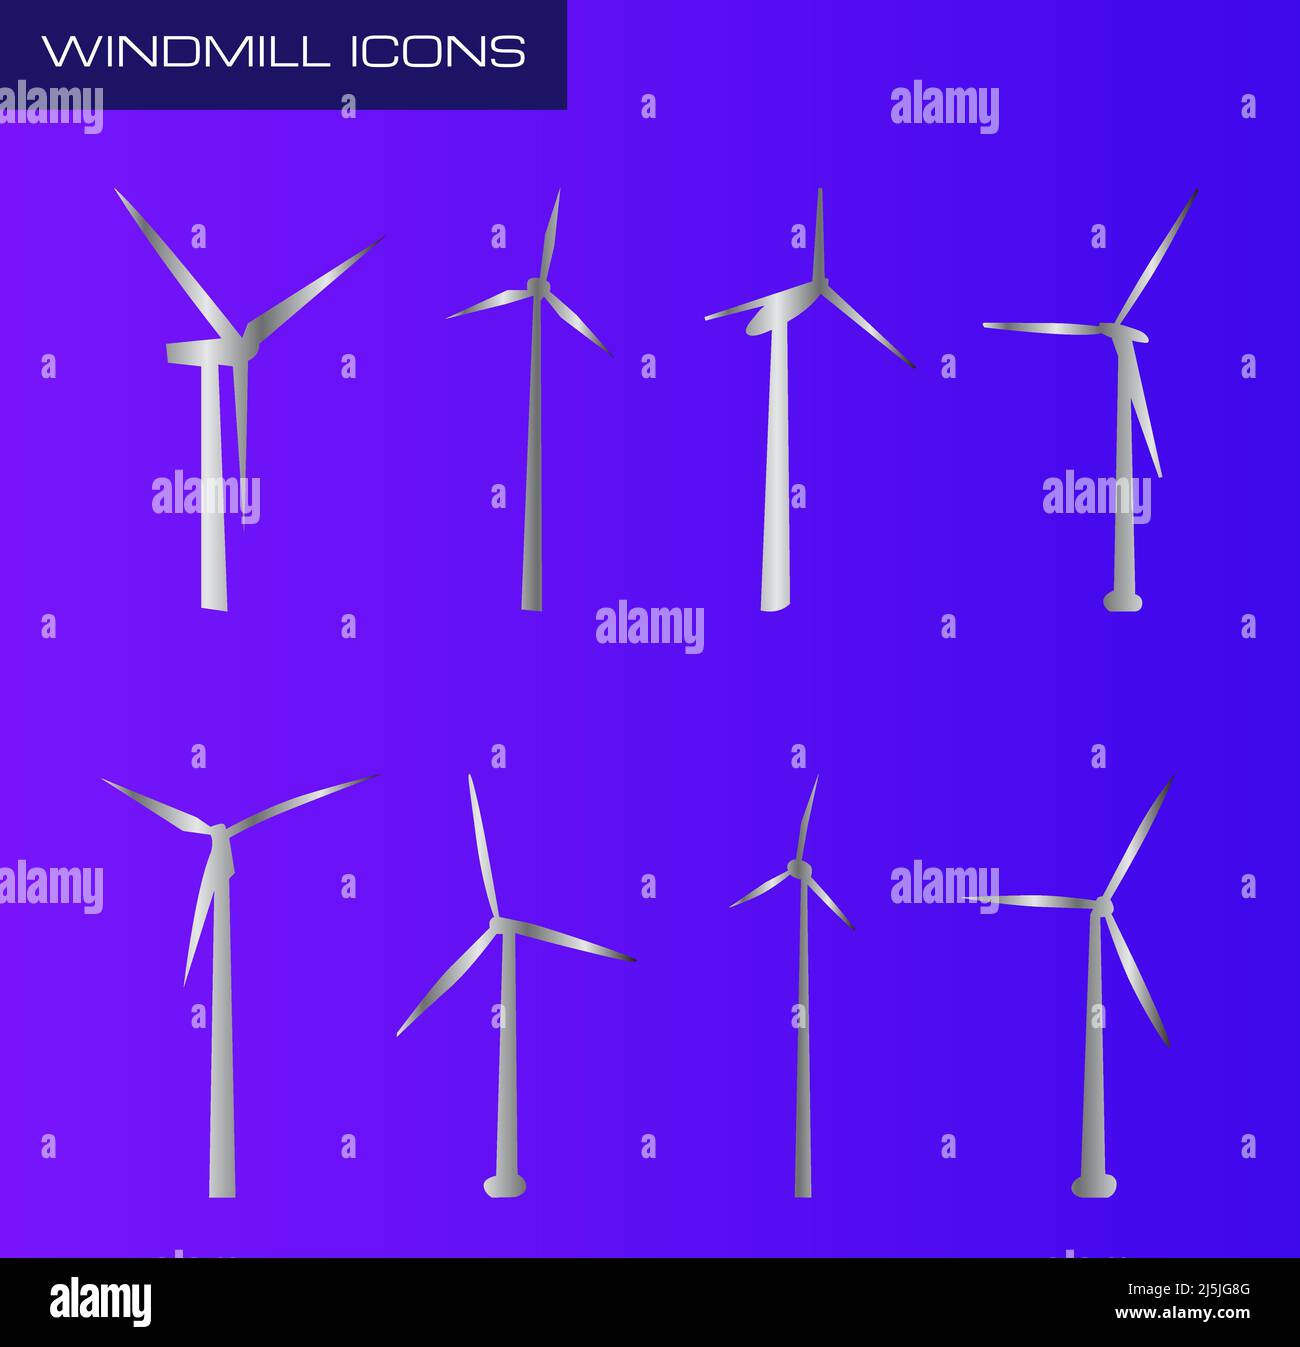 Ensemble d'icônes vectorielles Windmill pour la conception graphique, le logo, le site Web, les médias sociaux, l'application mobile, Illustration de l'interface utilisateur Illustration de Vecteur